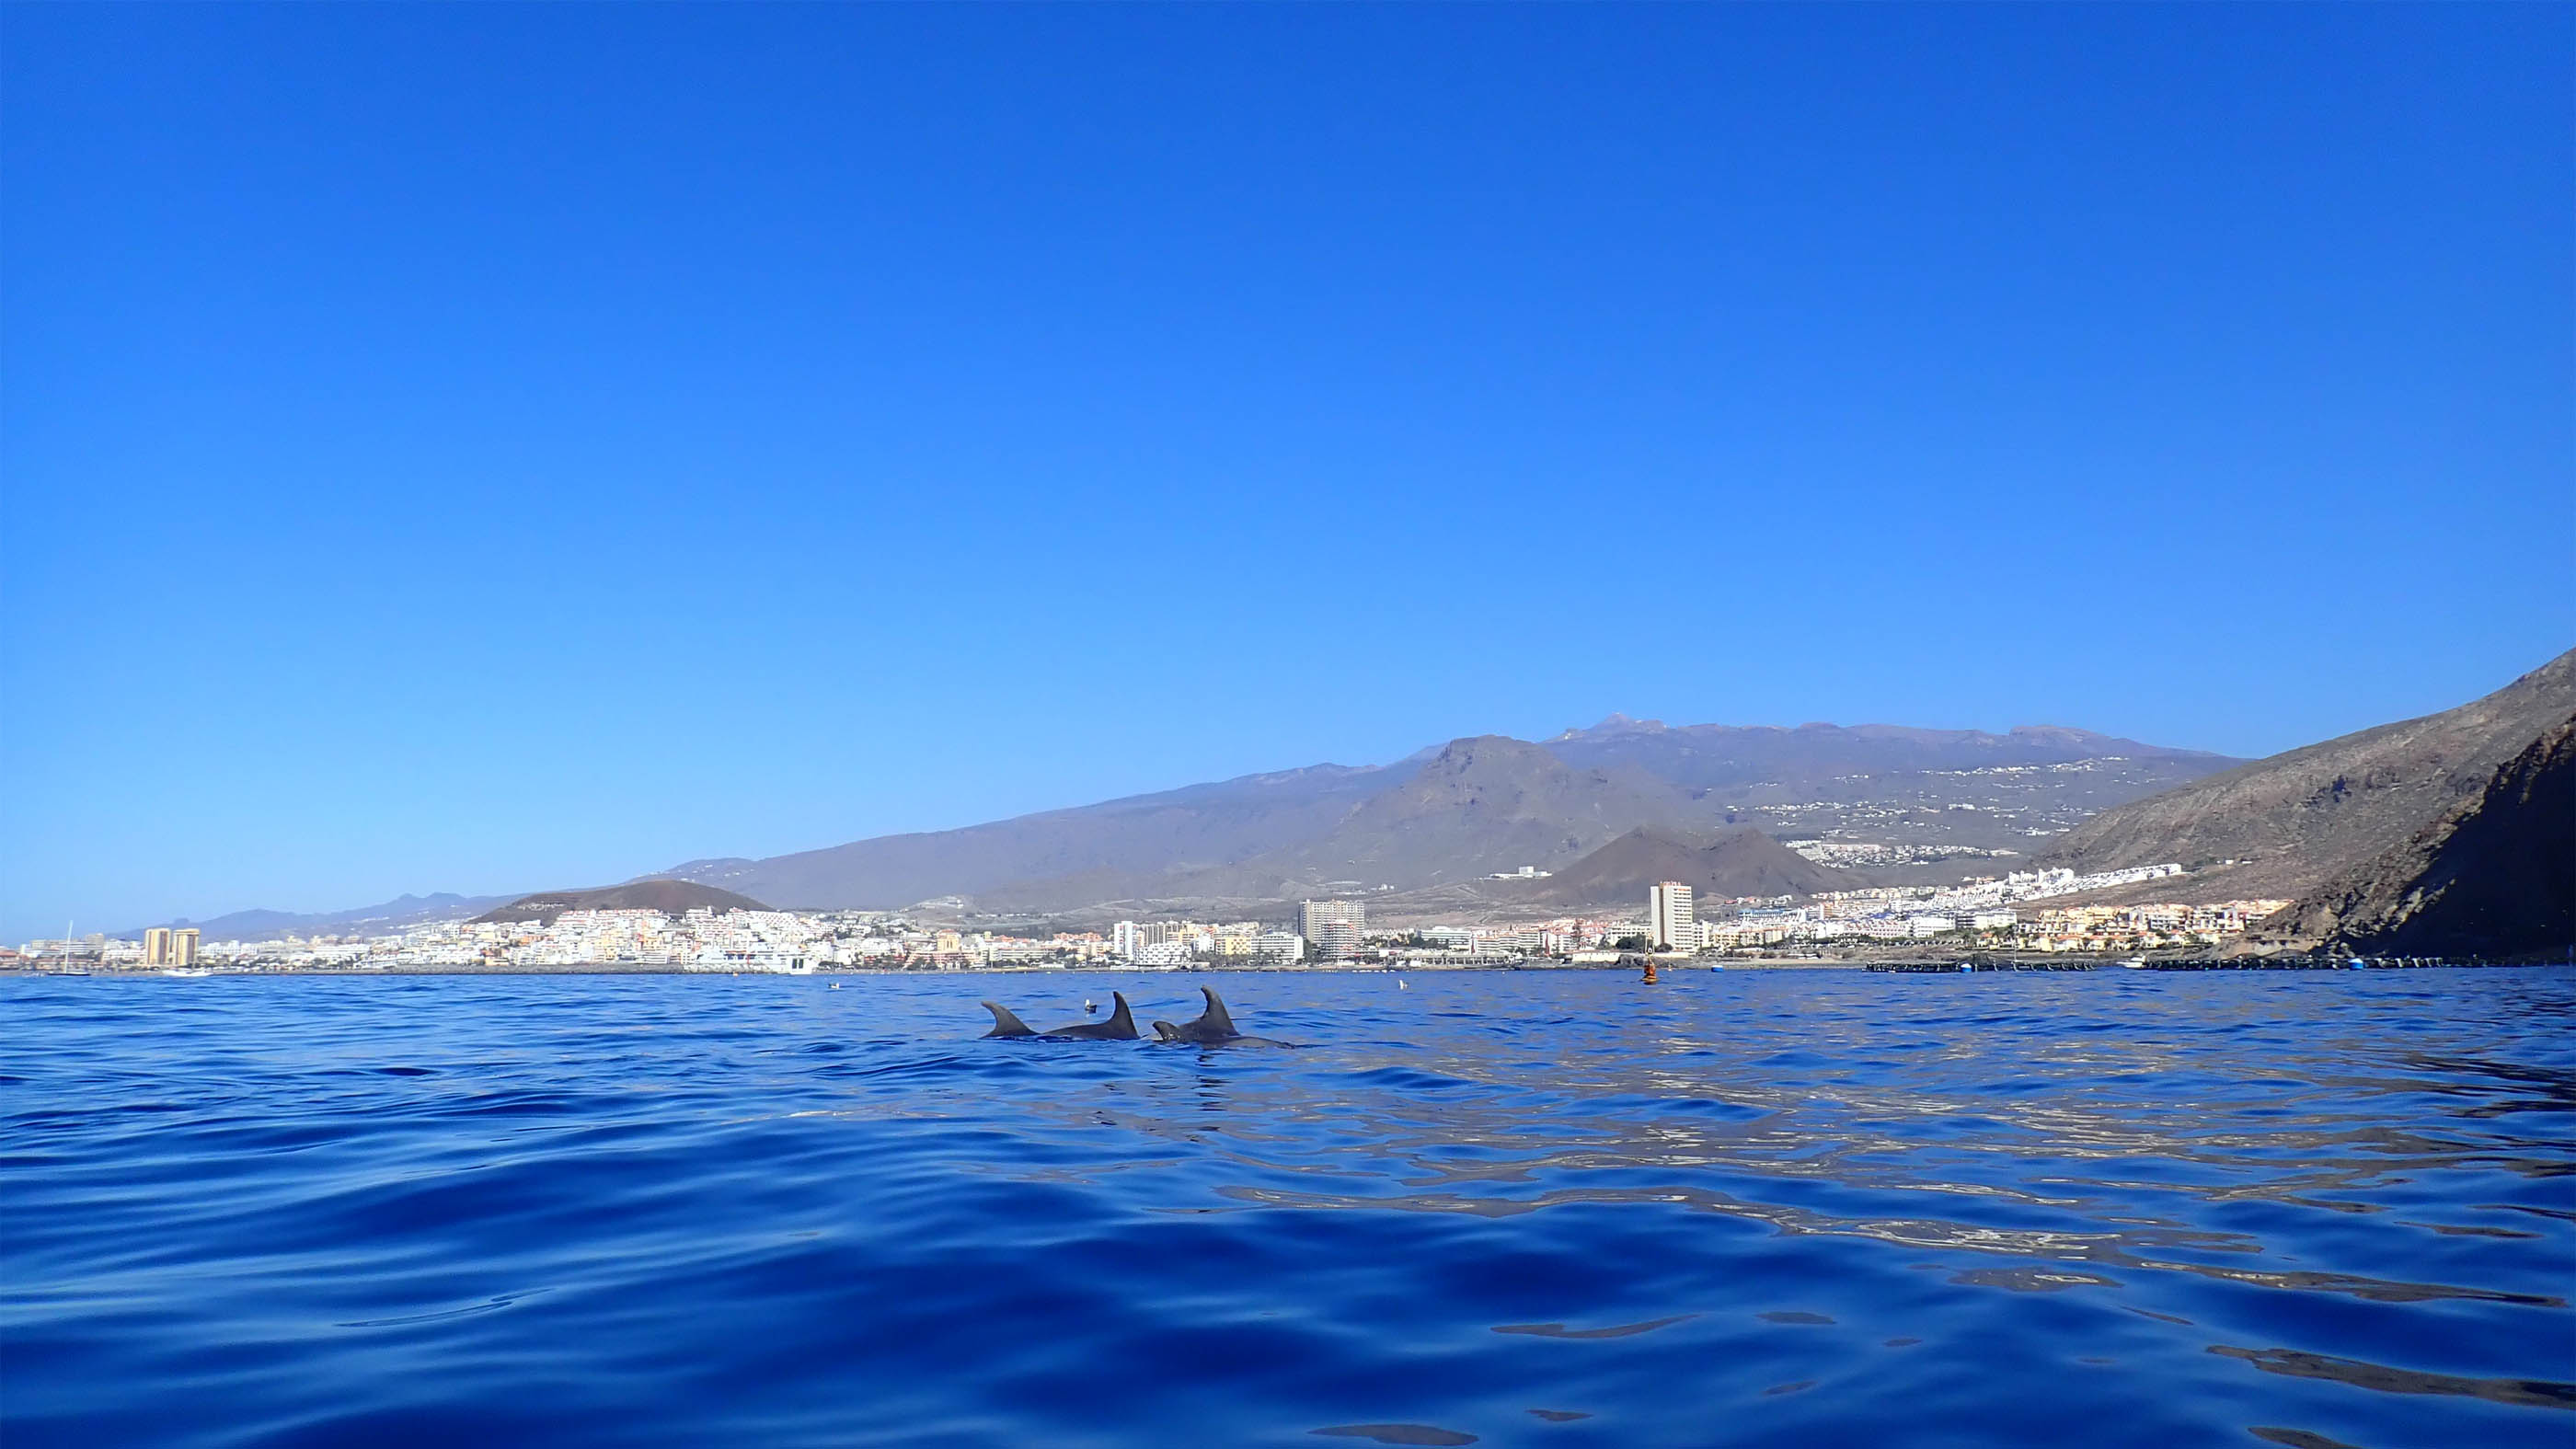 Dolfijnen voor de kust van Los Cristianos op Tenerife.